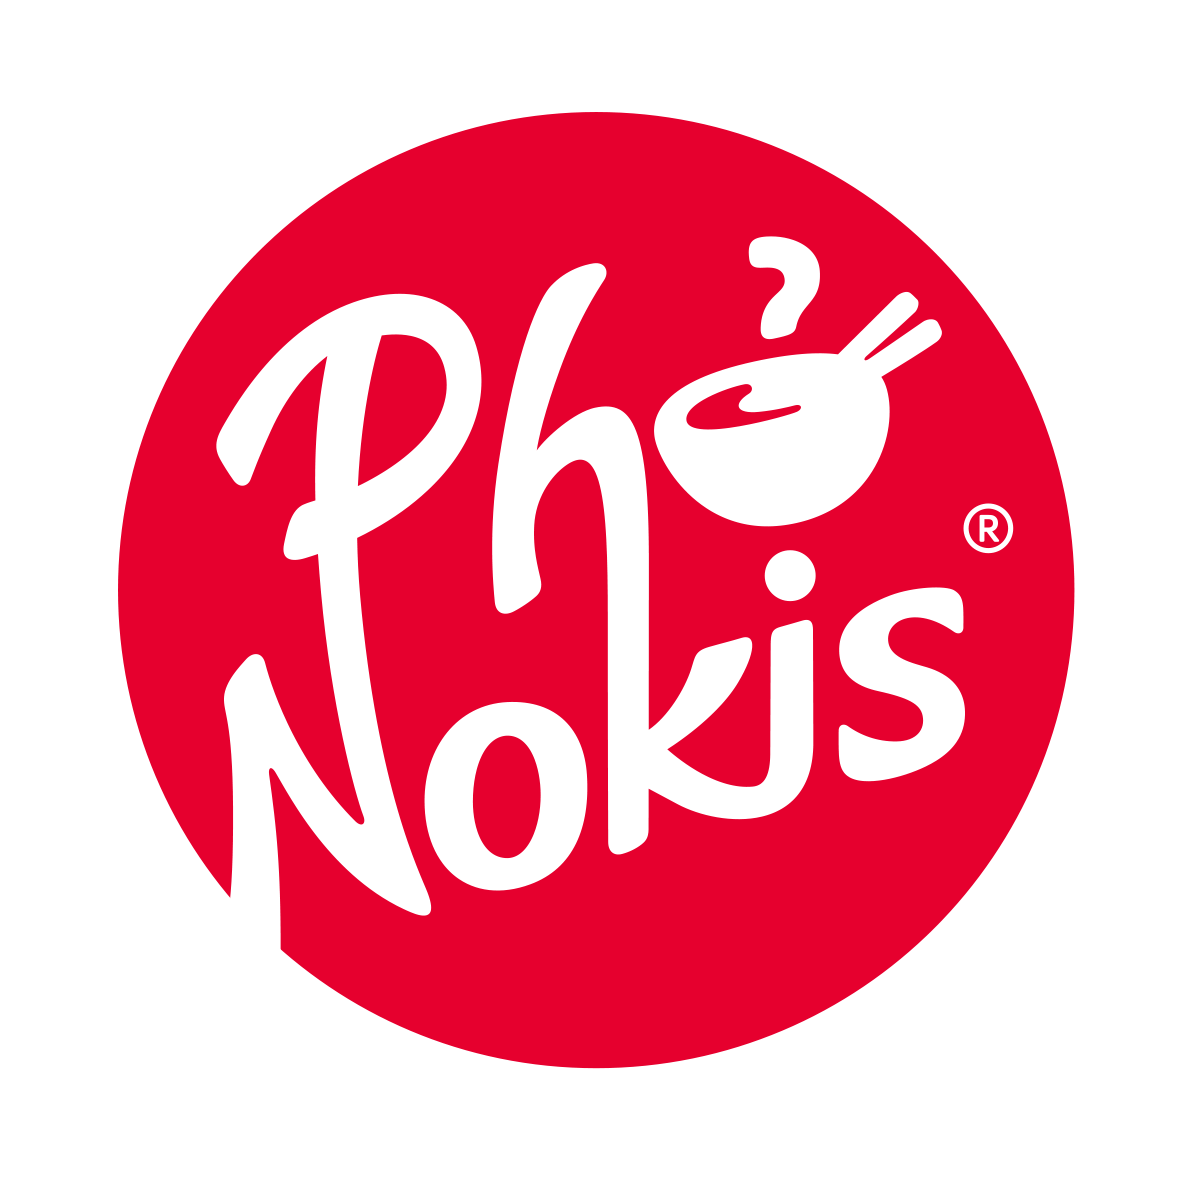 Pho Nokis